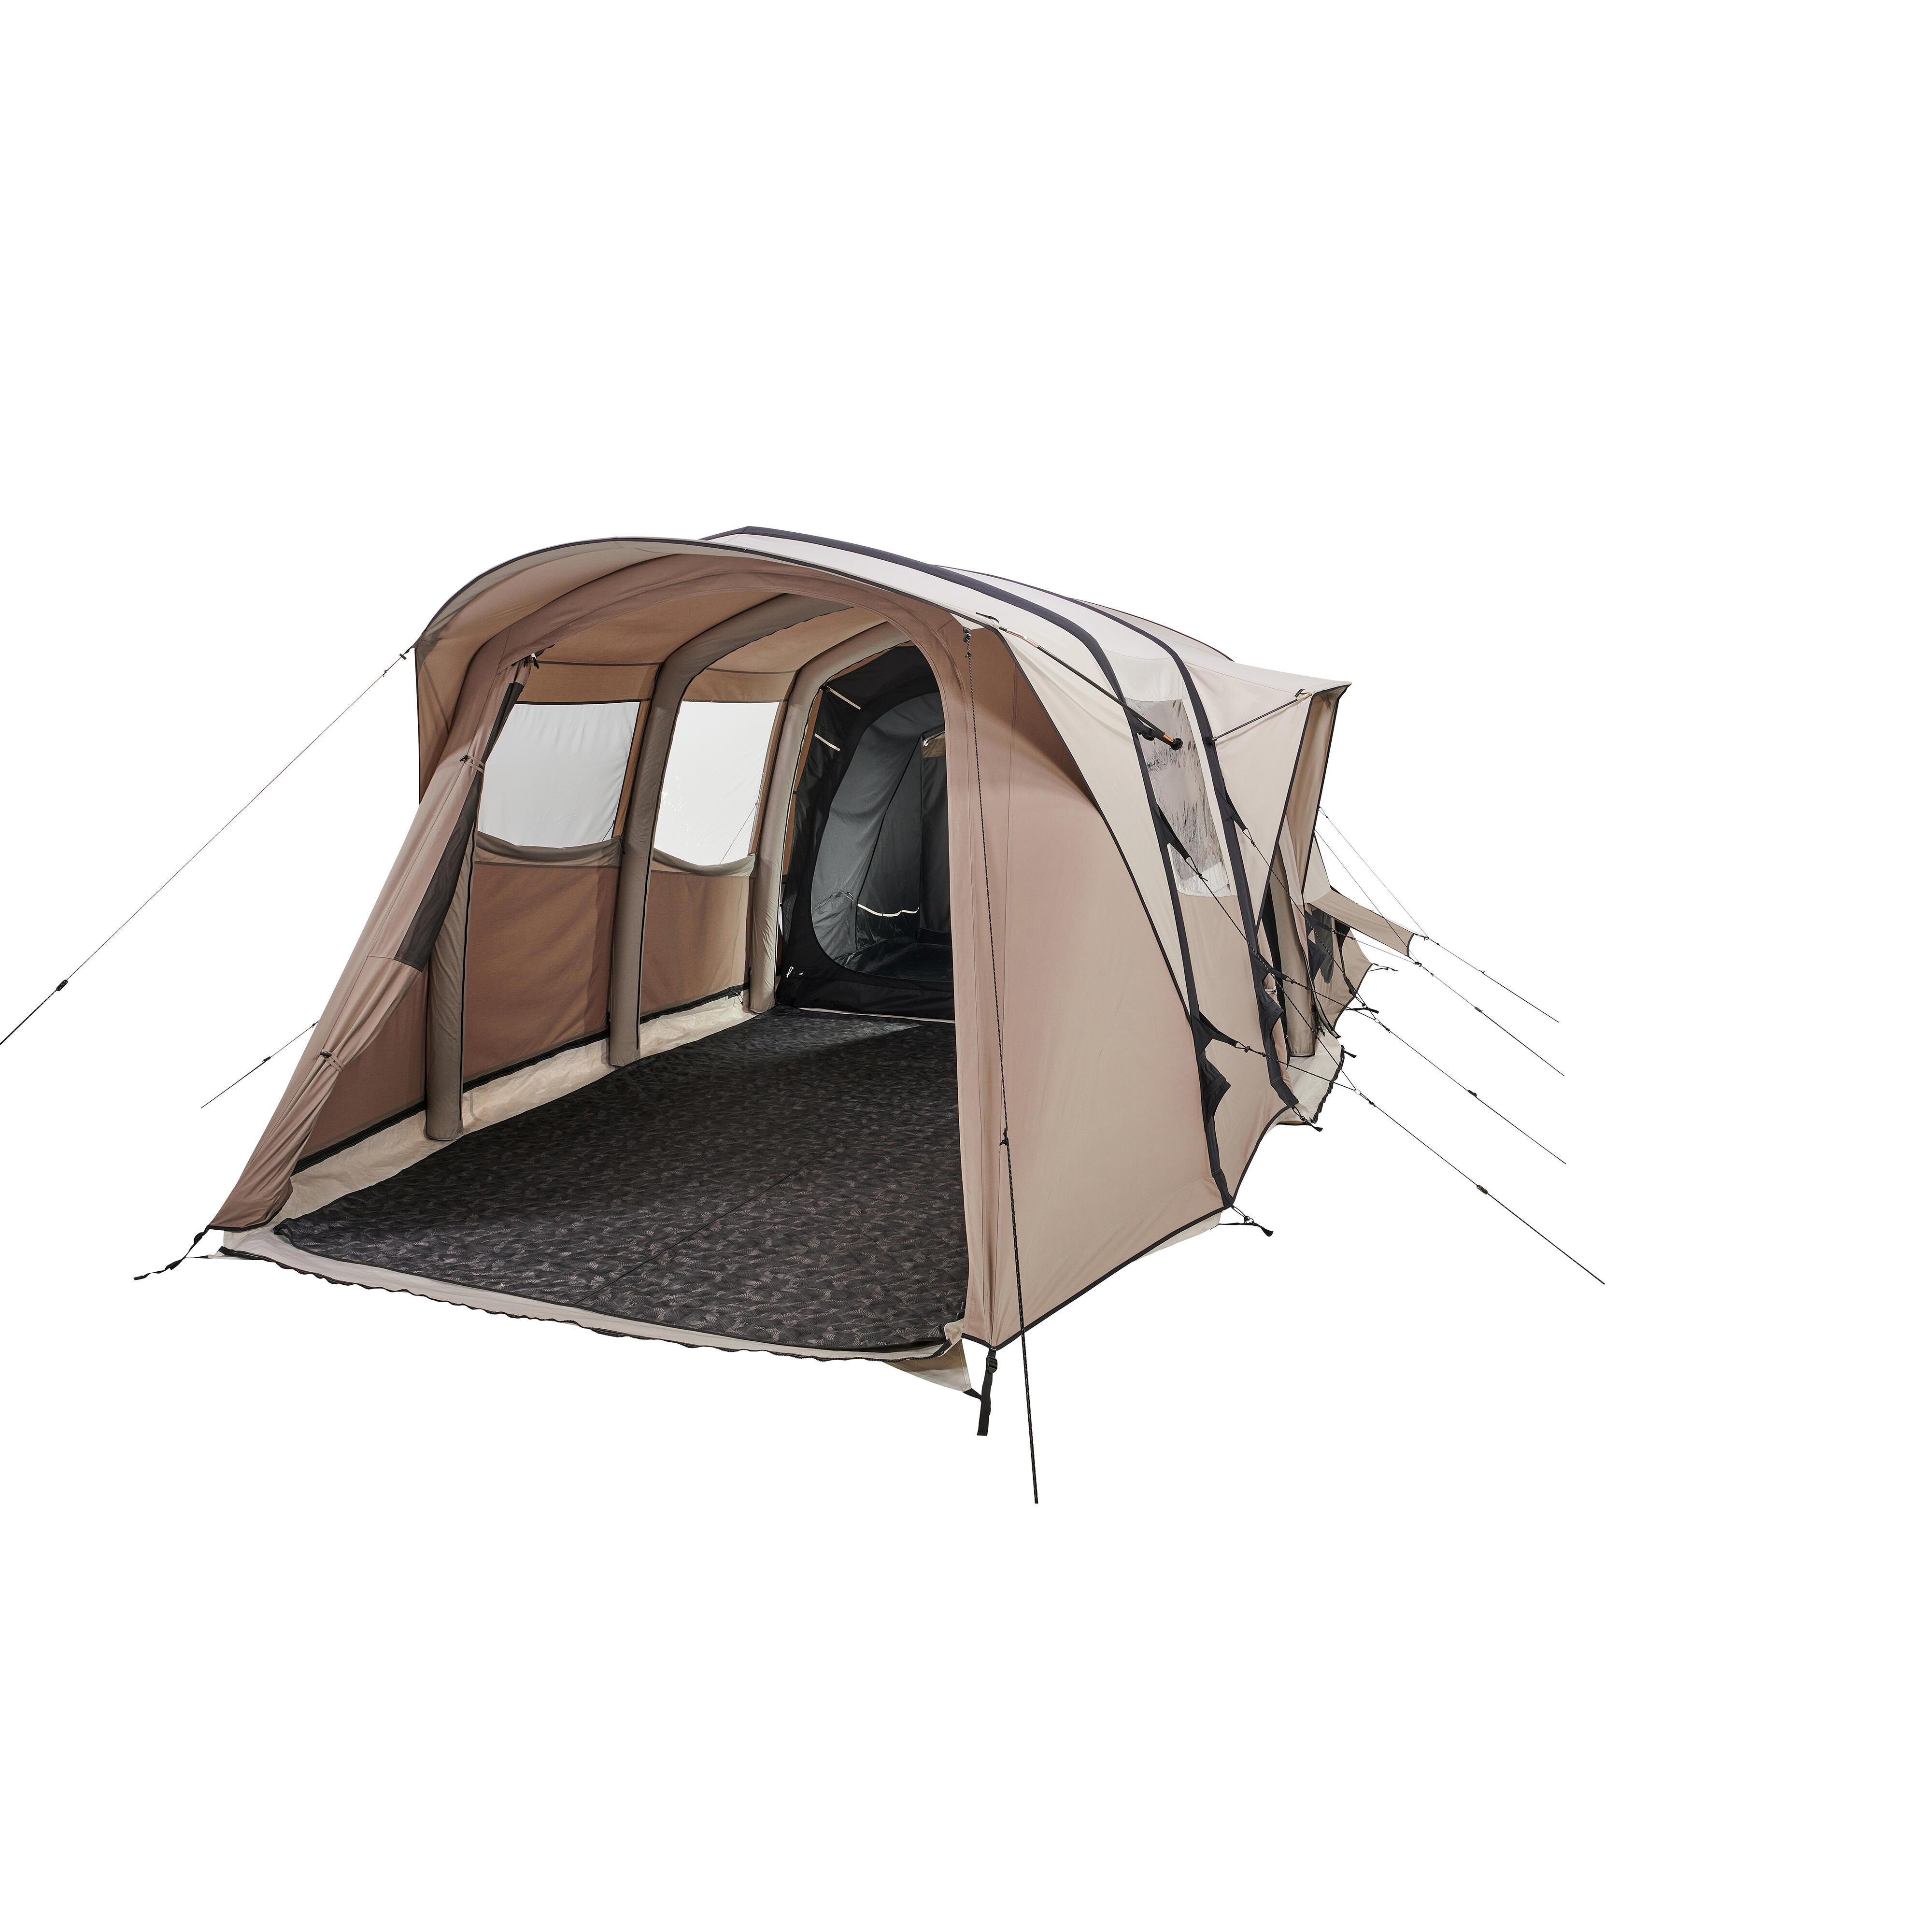 Cort structură gonflabilă camping AirSeconds 6.3 Polibumbac 6 Persoane 3 Camere La Oferta Online decathlon imagine La Oferta Online